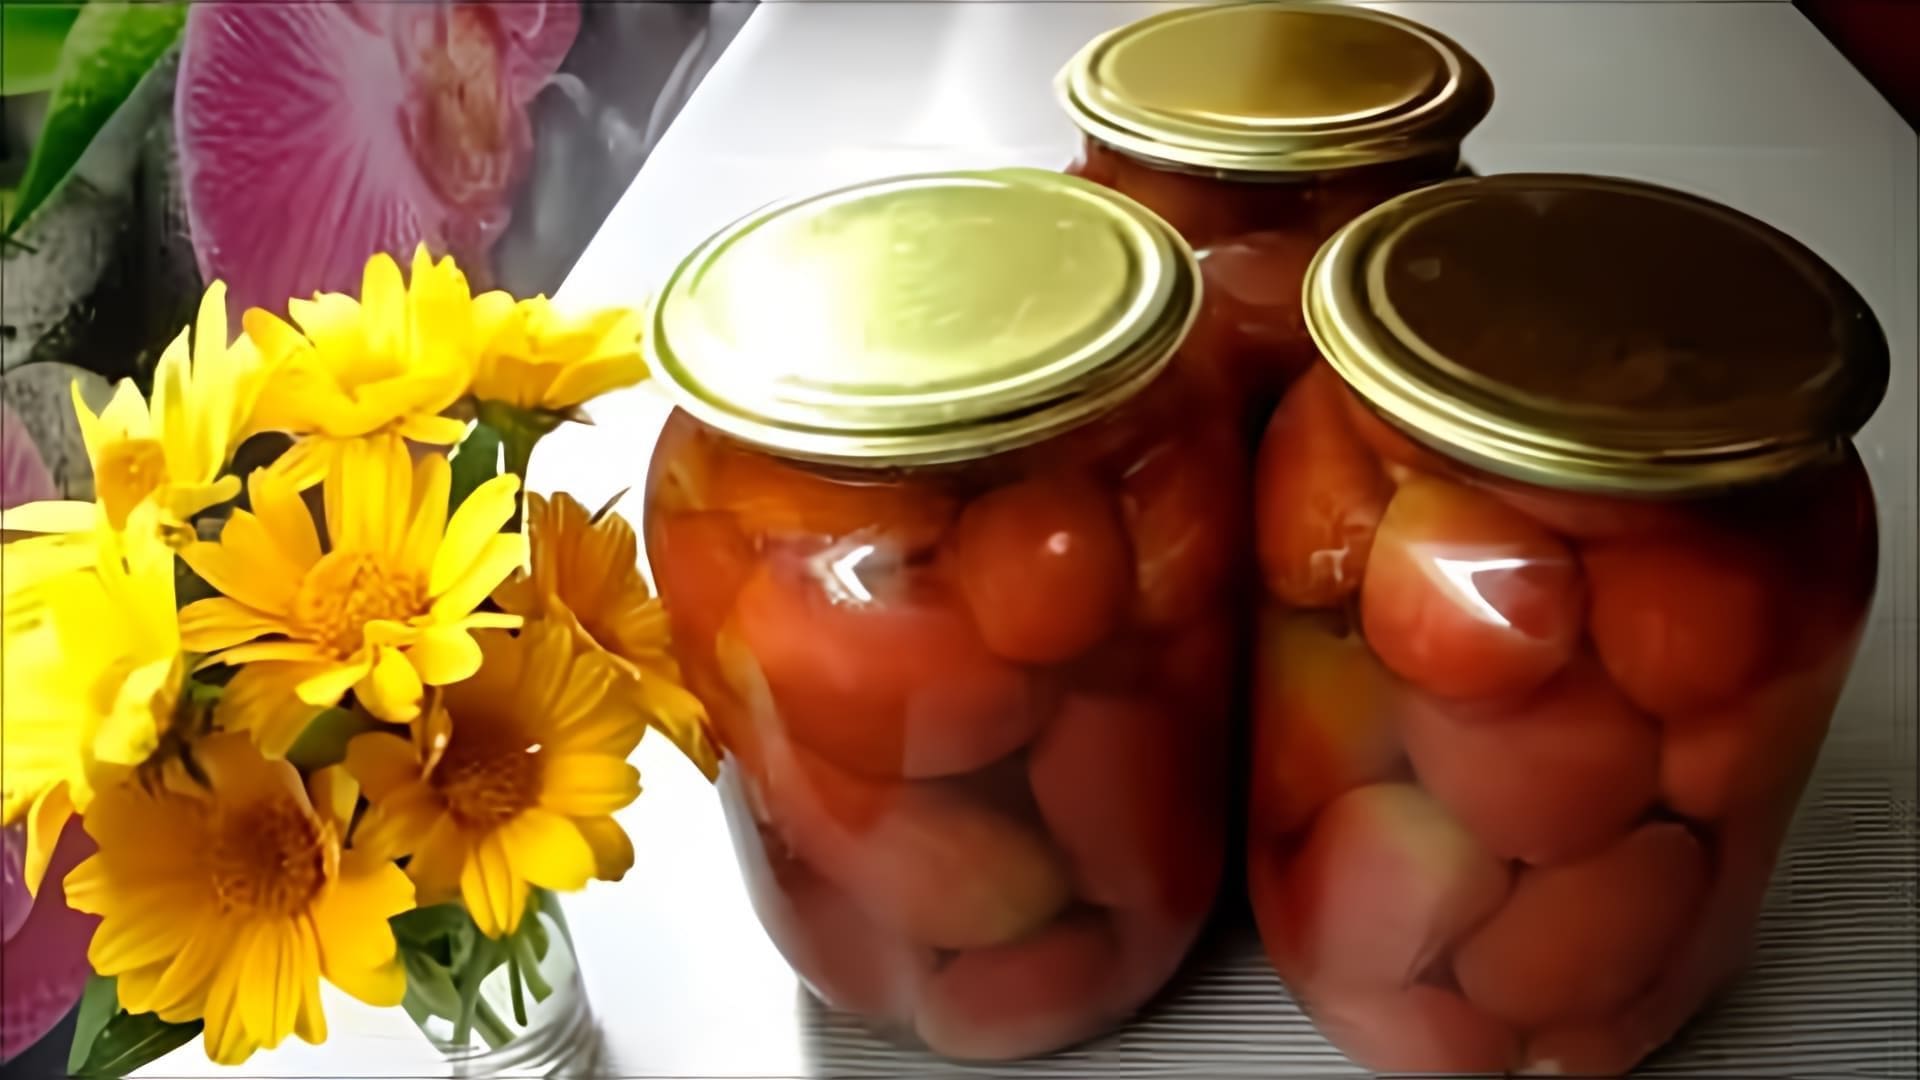 В этом видео демонстрируется процесс консервирования помидоров по очень вкусному рецепту